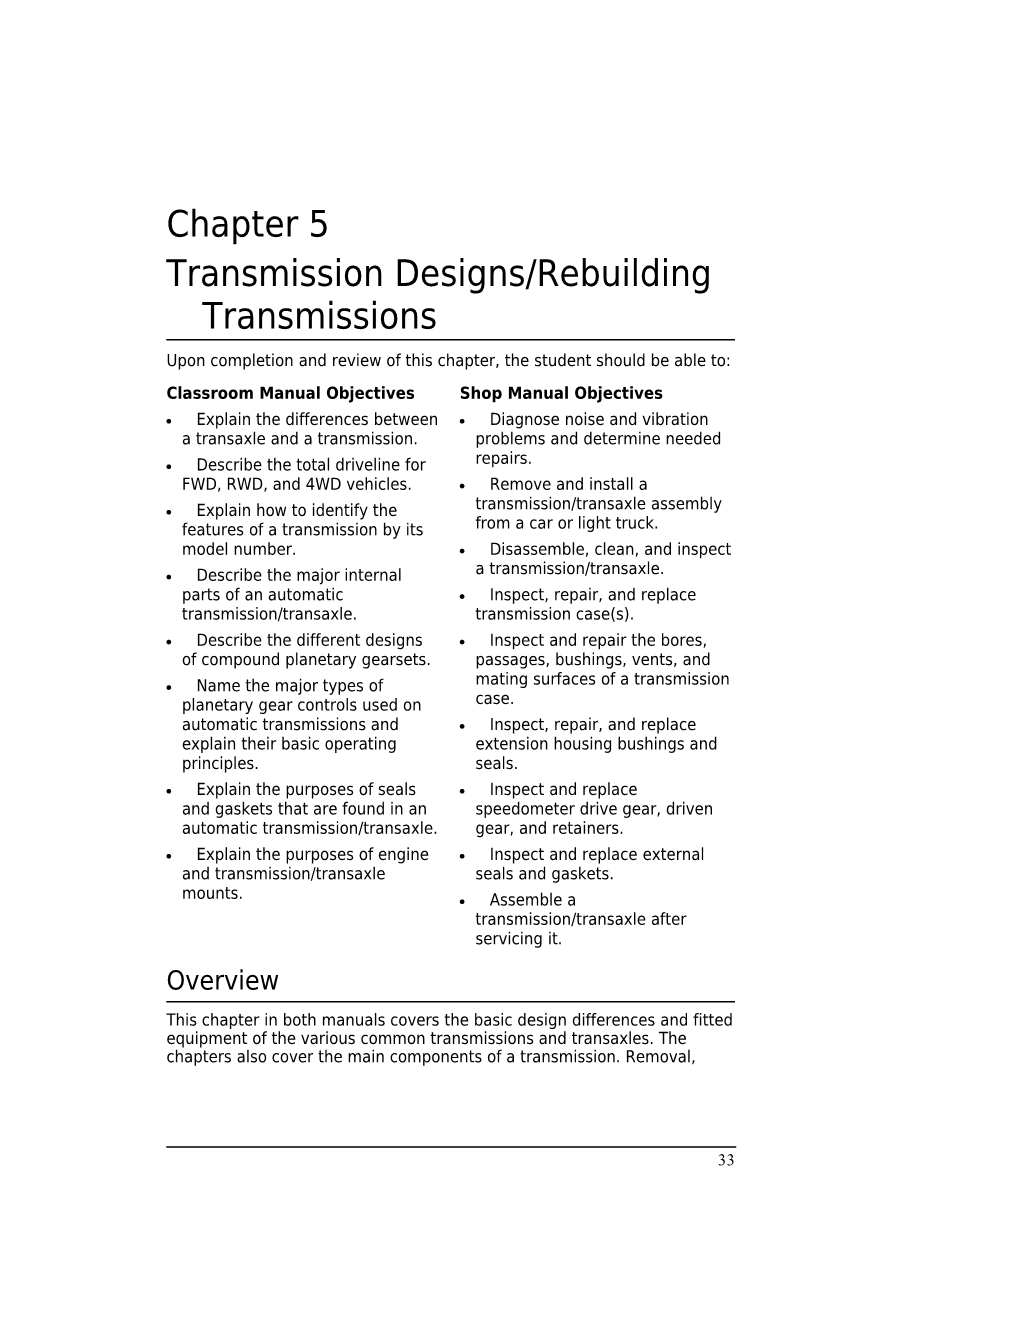 Transmission Designs/Rebuilding Transmissions